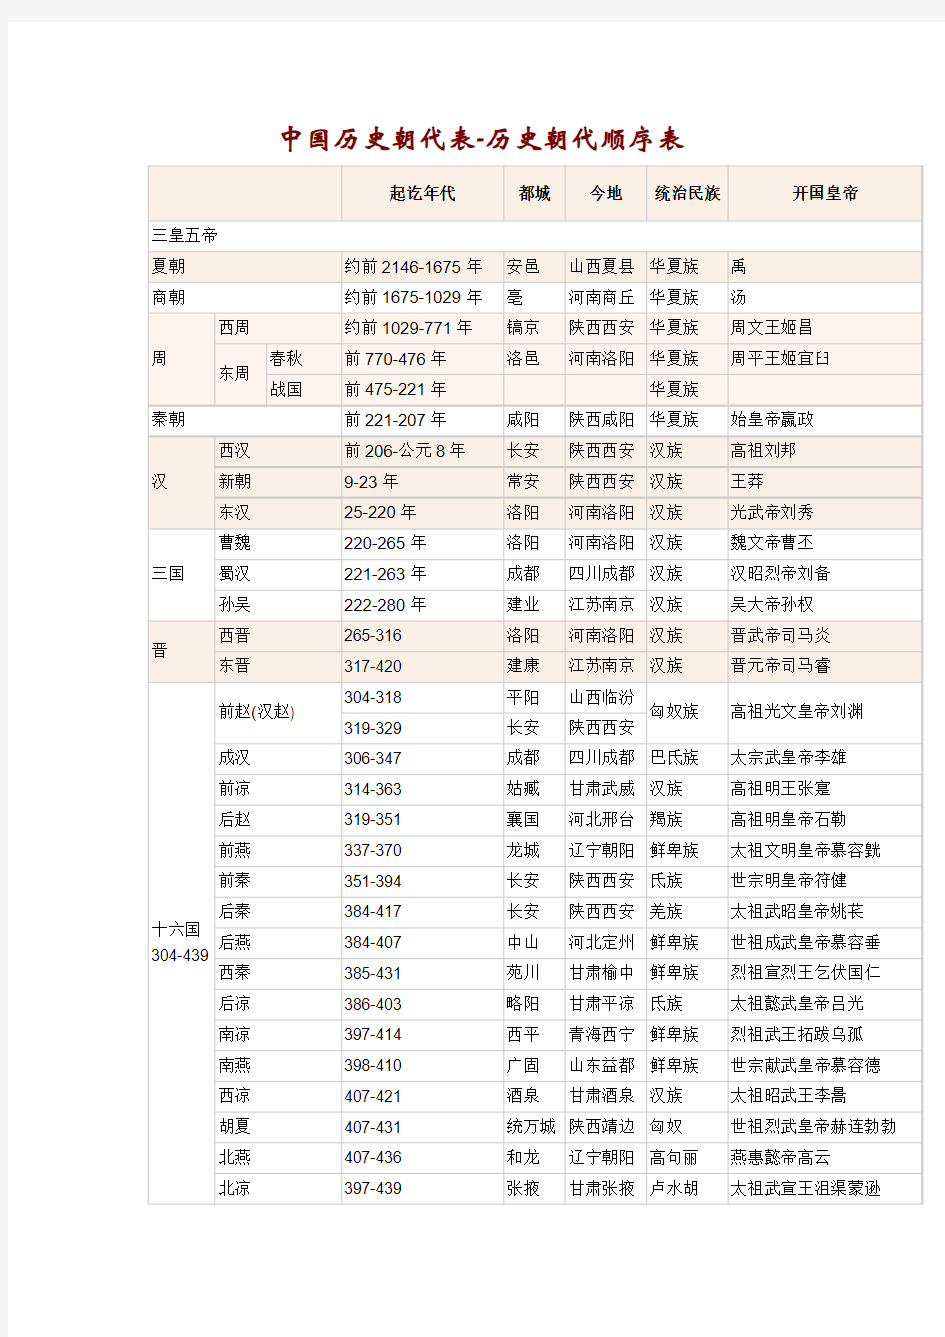 中国历史朝代表-历史朝代顺序表